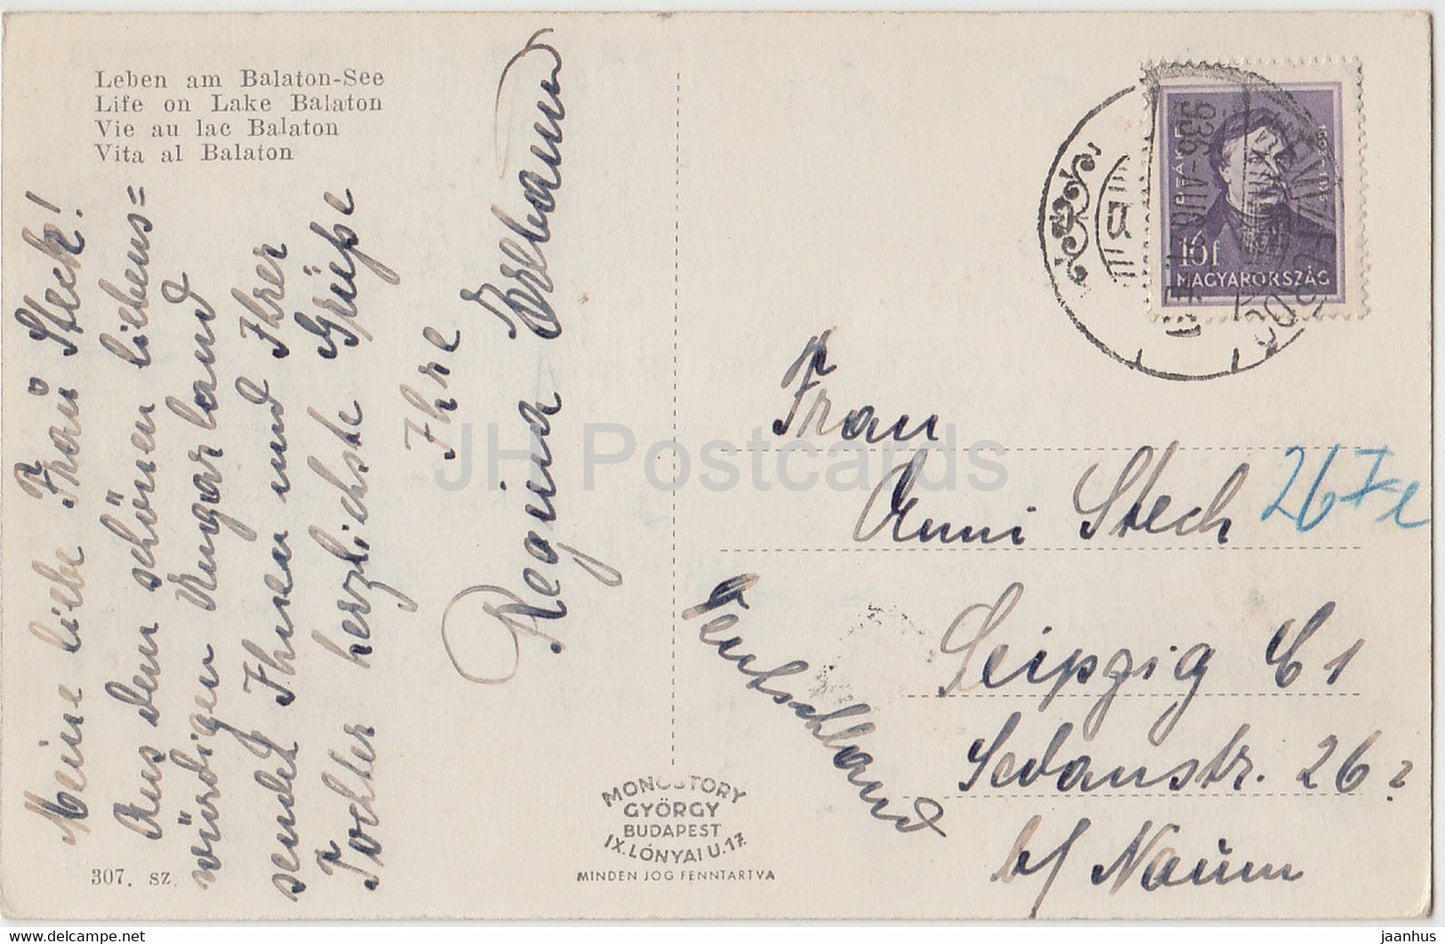 Balatoni elet - Leben am Balaton See - bateau à voile - pêche - carte postale ancienne - 1921 - Hongrie - utilisé